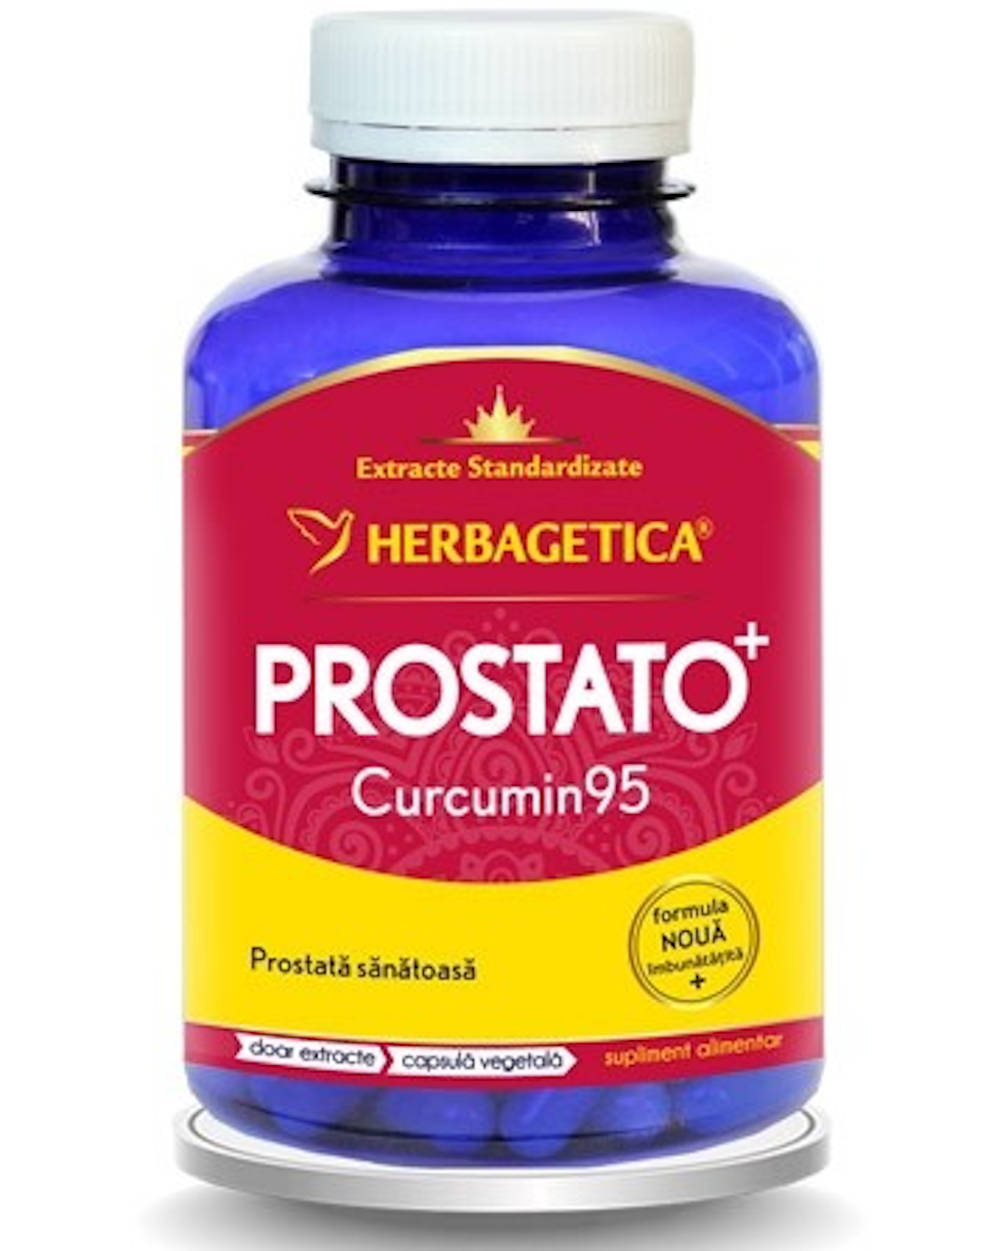 prostato curcumin 95 forum